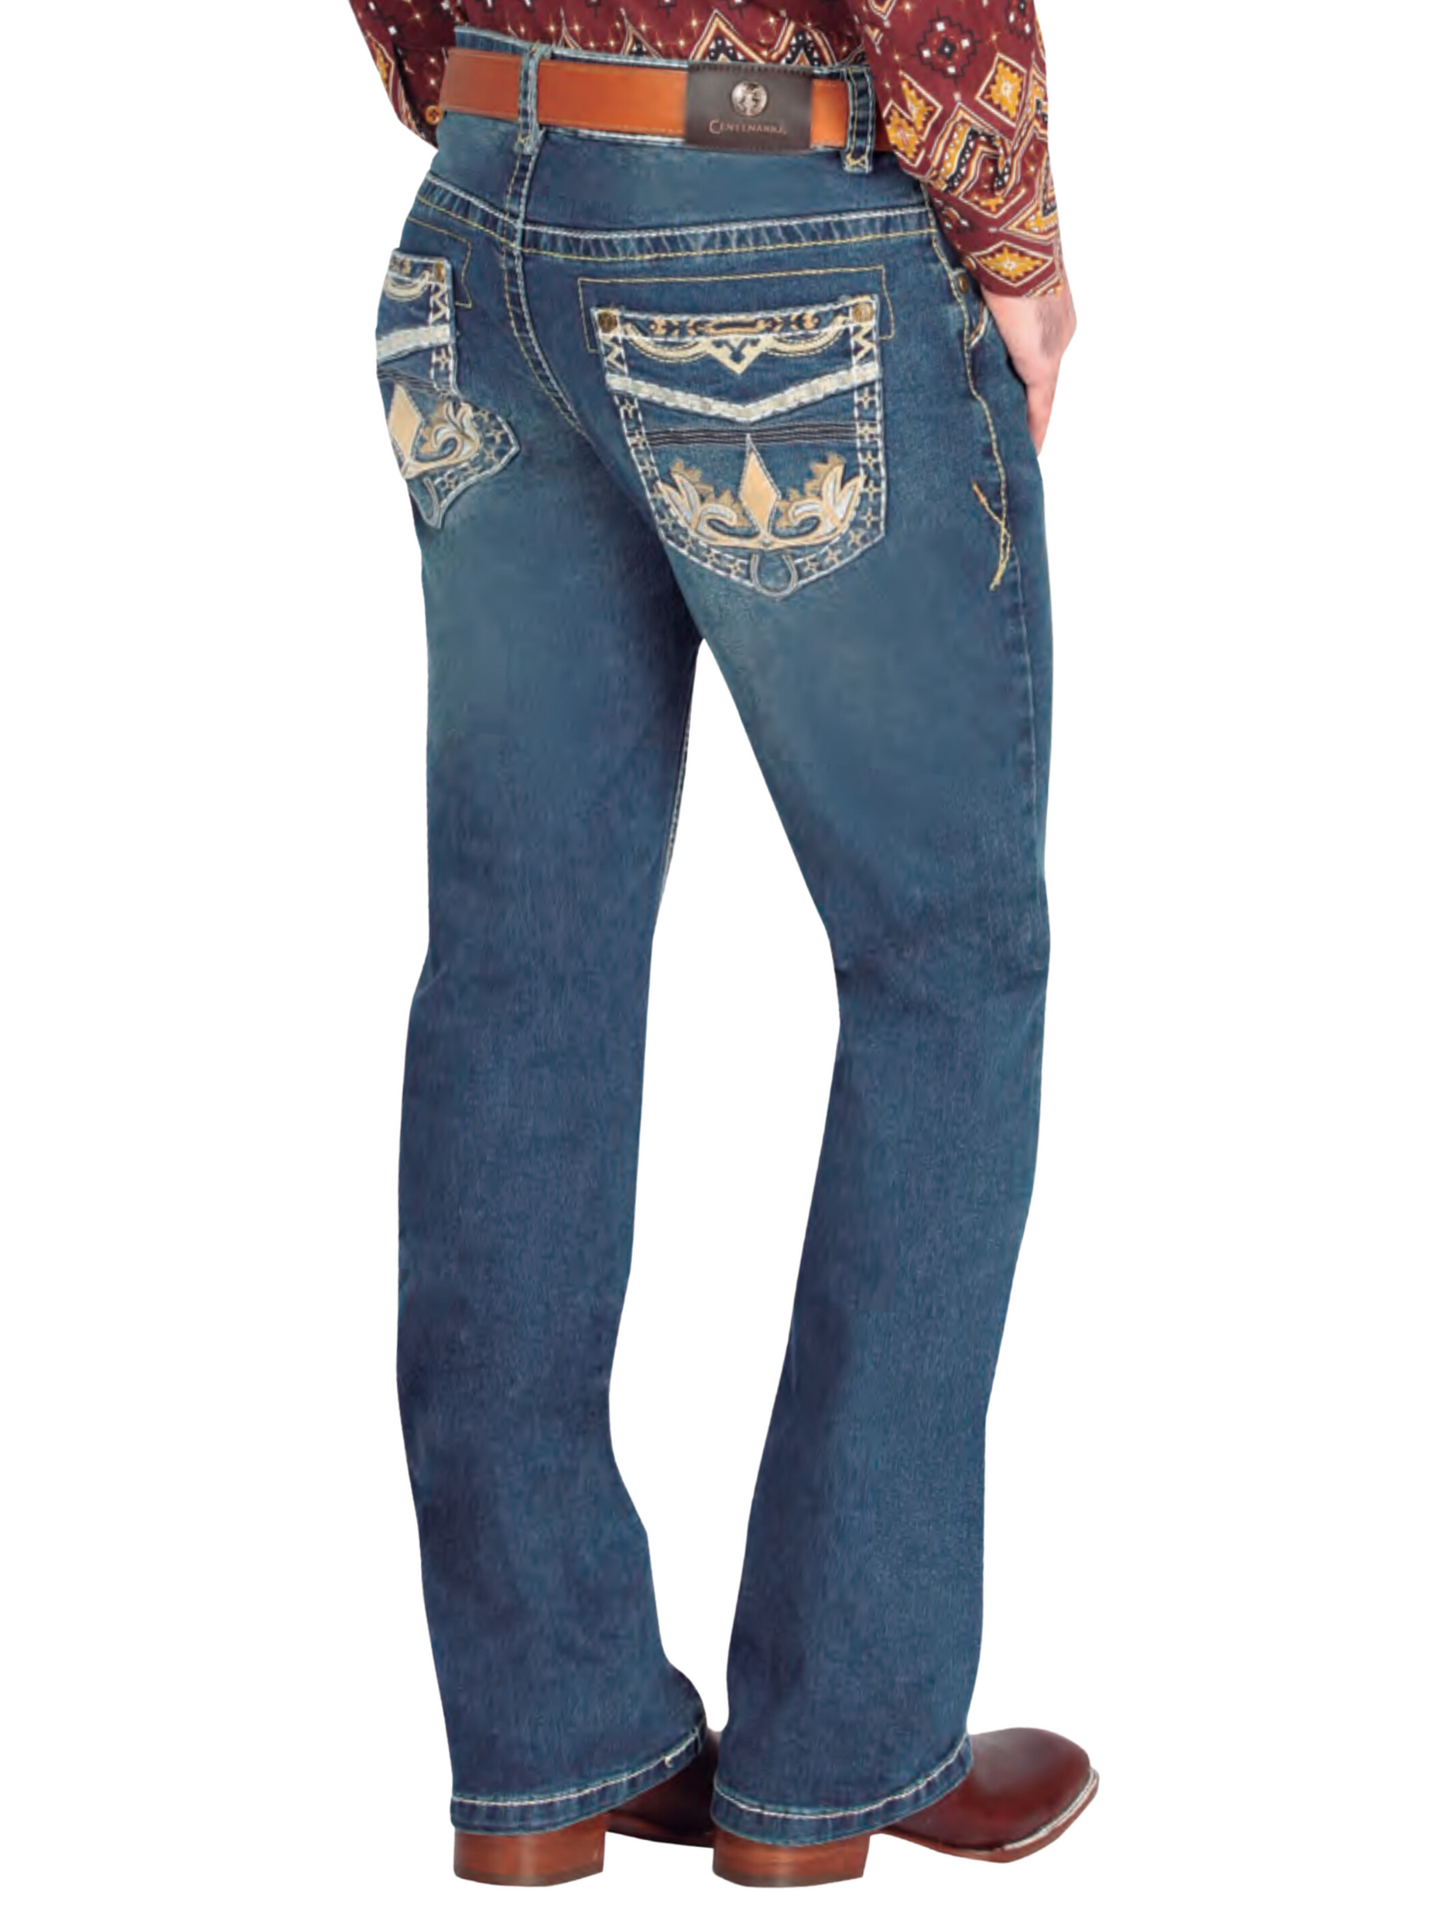 Pantalon Vaquero de Mezclilla Boot Cut Azul Oscuro para Hombre 'Centenario' - ID: 44841 Denim Jeans Centenario 